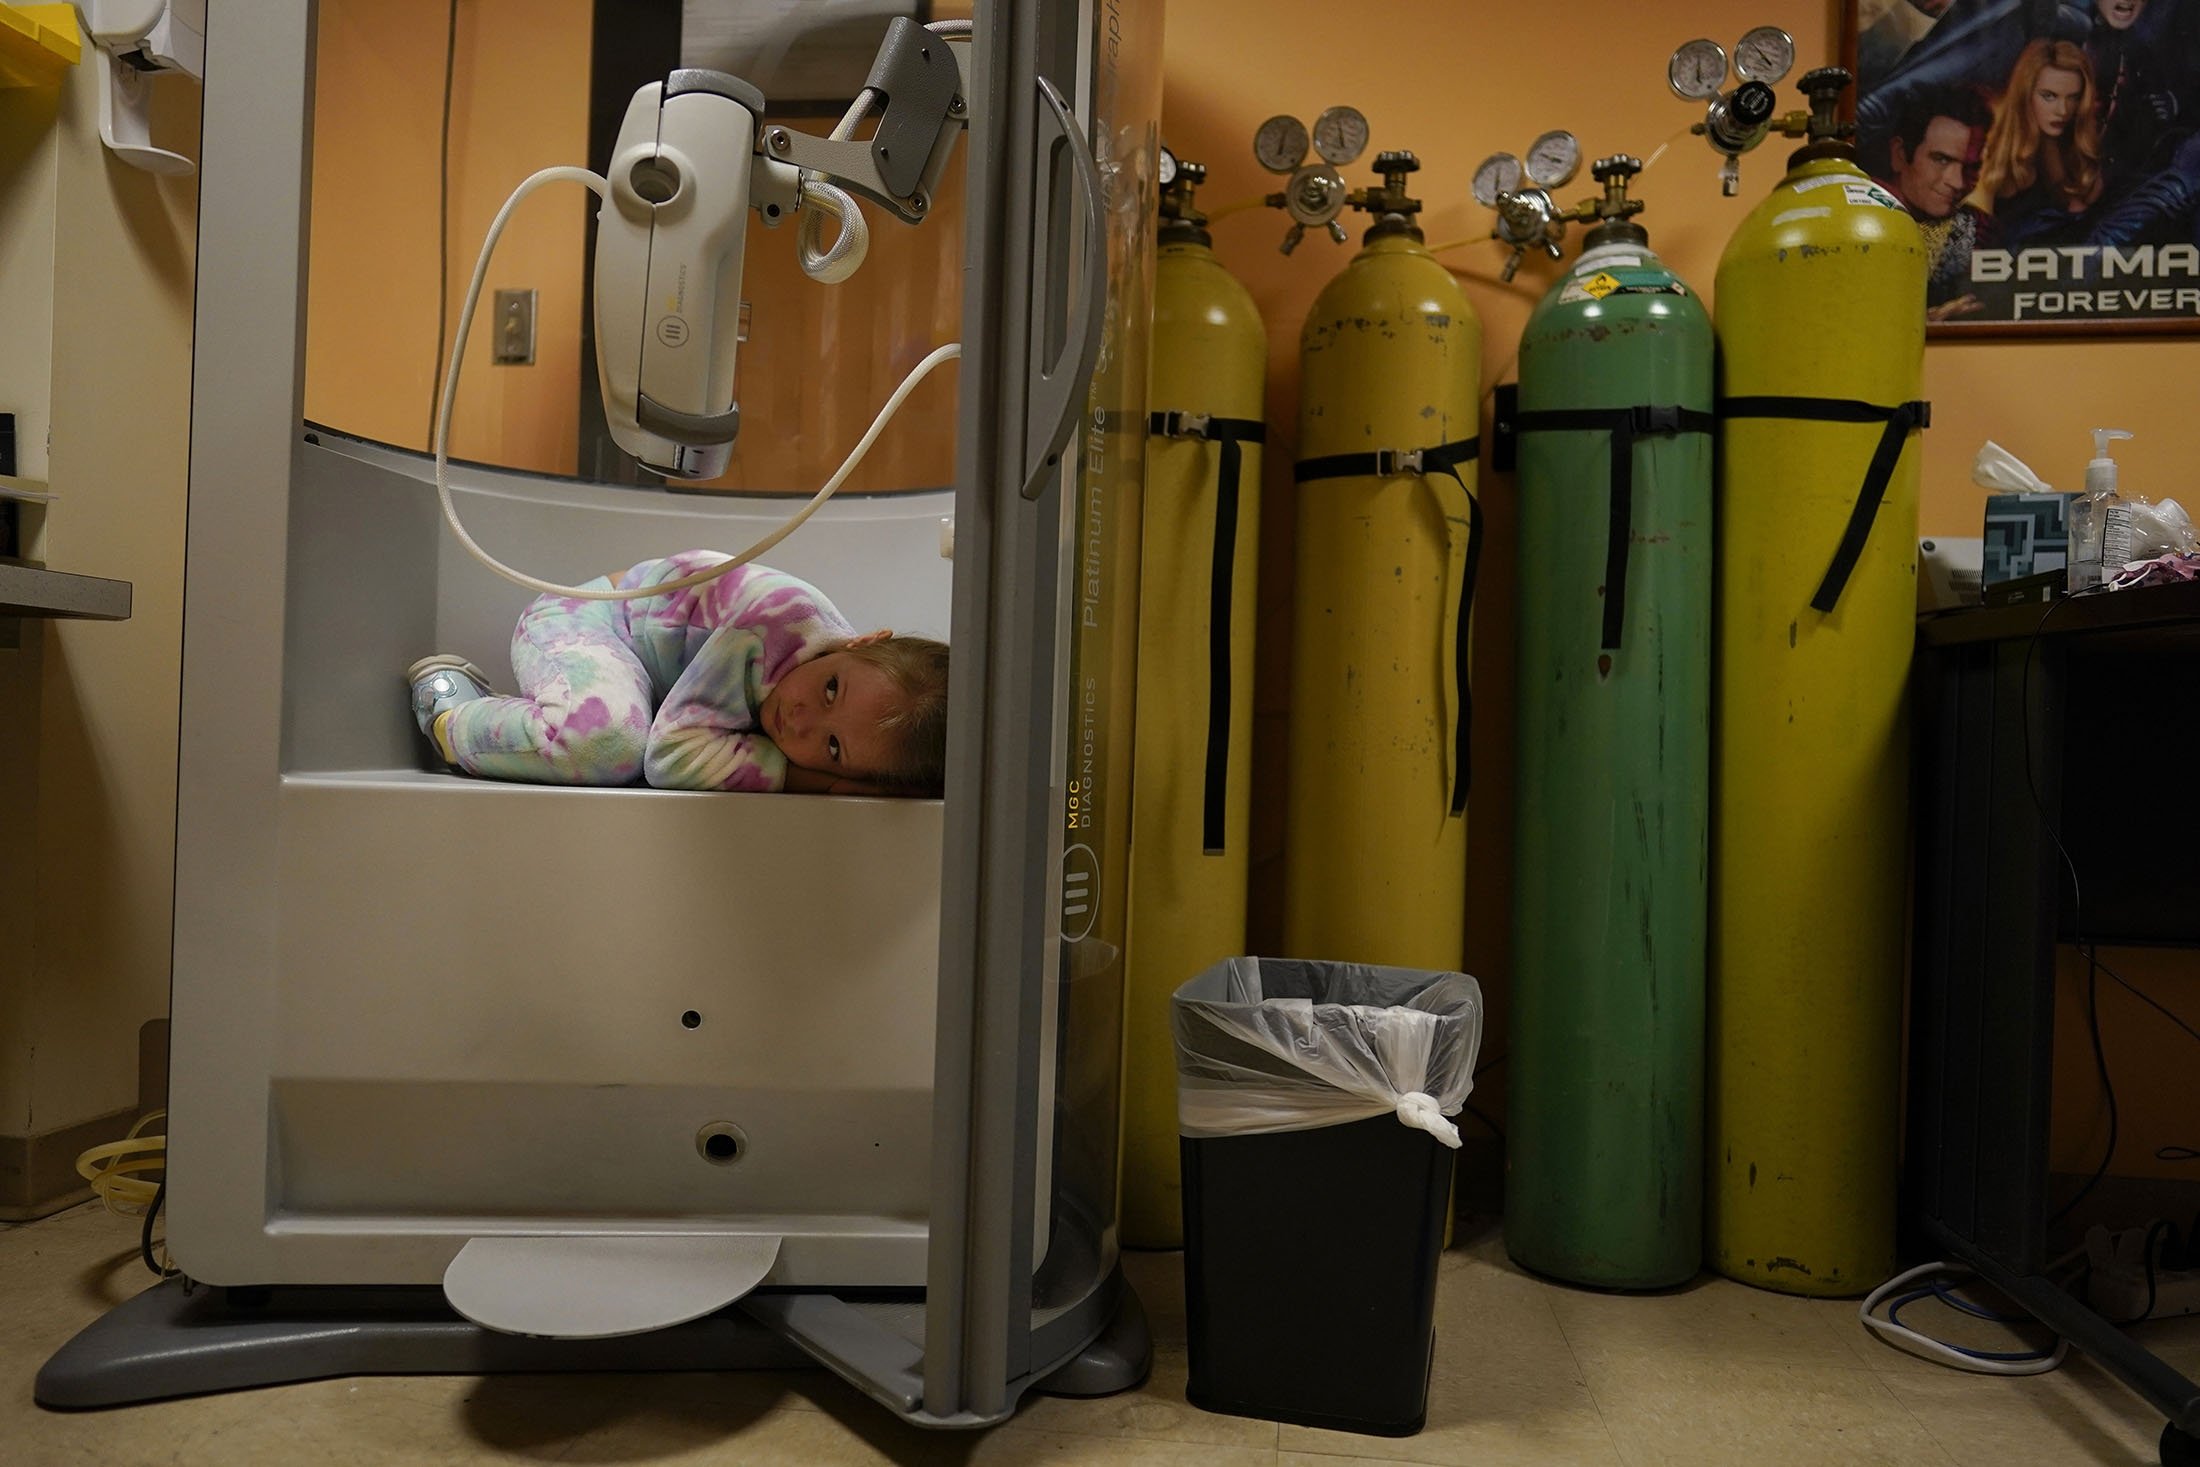 Lexie Forte, 6, meringkuk di ruang plethysmography saat istirahat dalam tes fungsi paru-parunya di Children's National Hospital, di Washington, AS, 26 Januari 2022. (AP Photo)